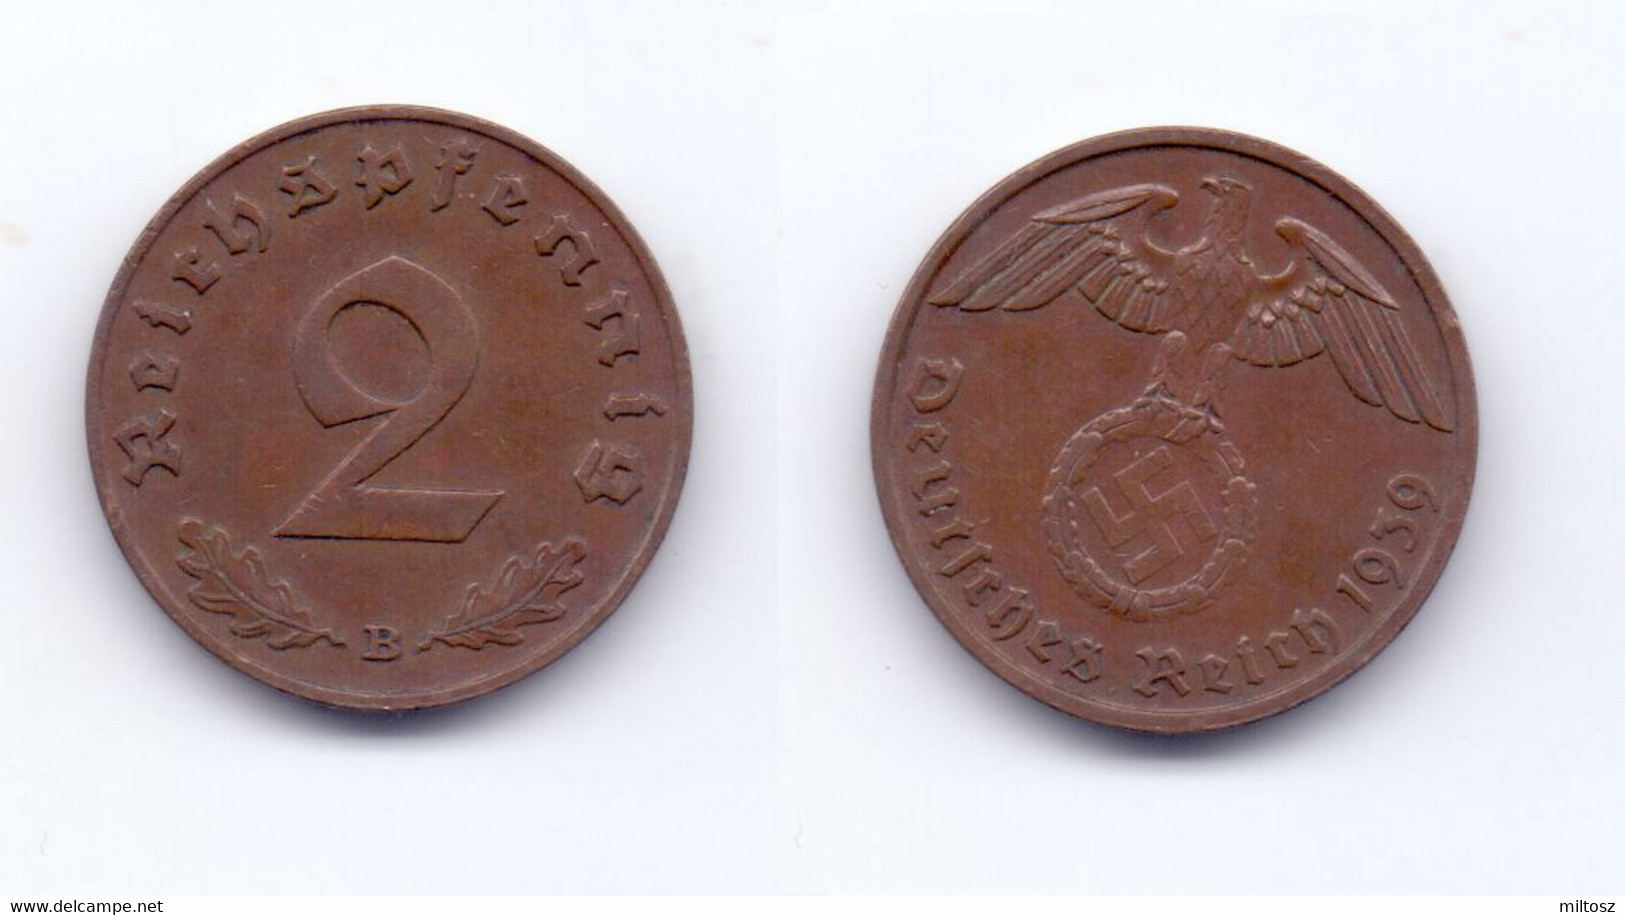 Germany 2 Reichspfennig 1939 B - 2 Reichspfennig